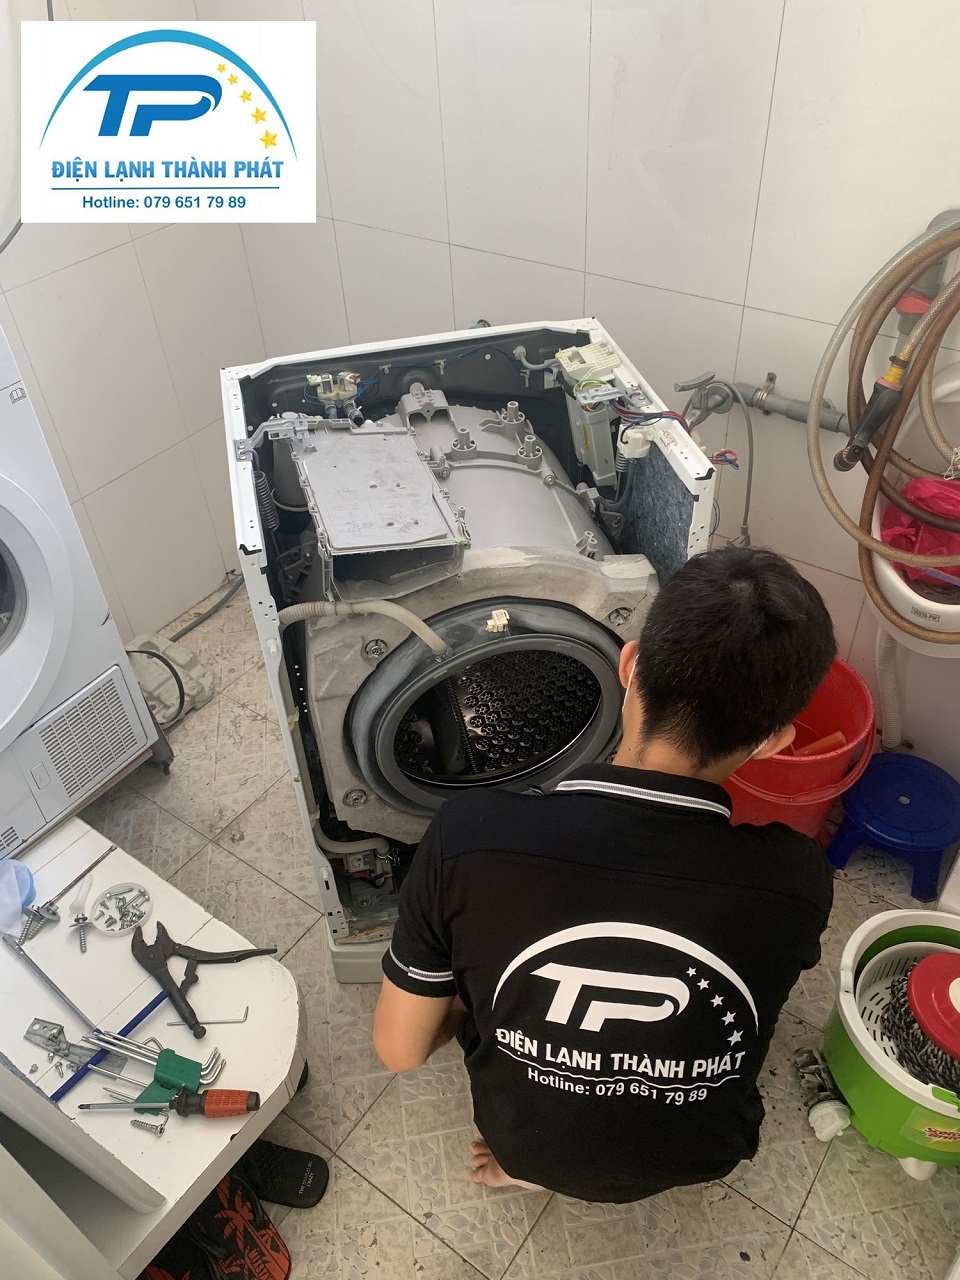 Điện lạnh Thành Phát - Đơn vị cung cấp dịch vụ sửa máy giặt Aqua uy tín hàng đầu.